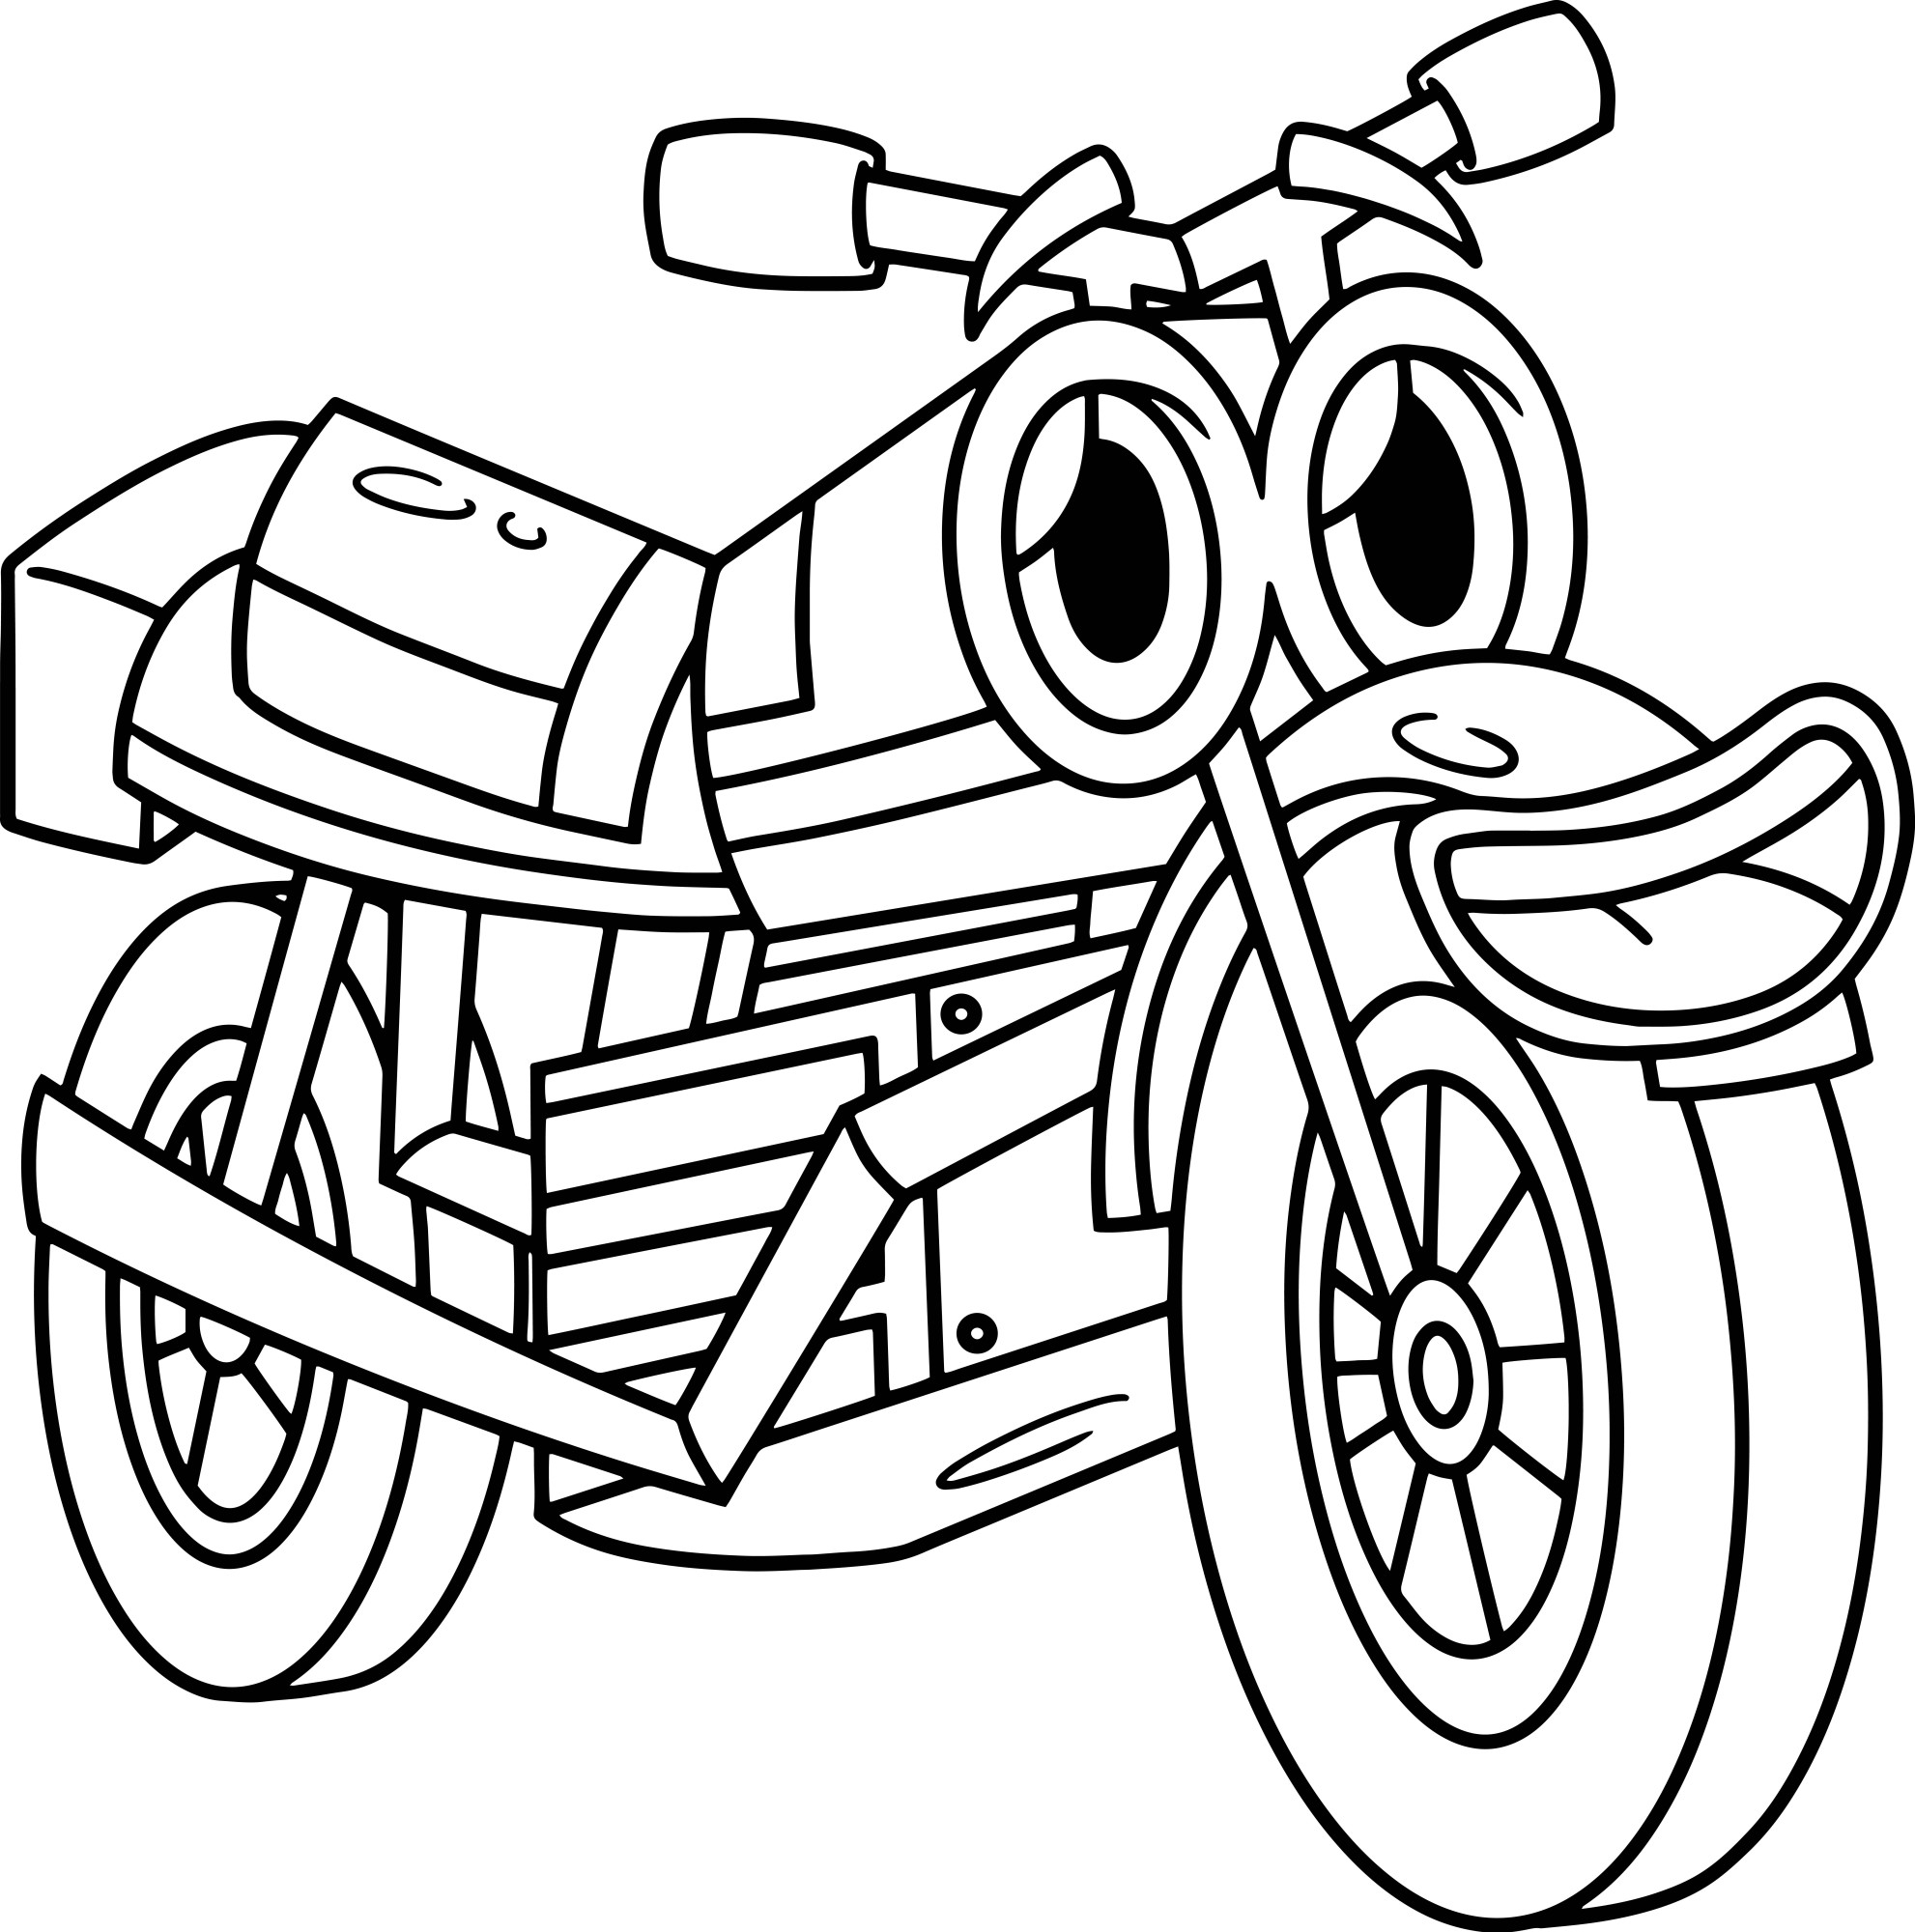 Раскраска для детей: игрушечный мотоцикл с глазами